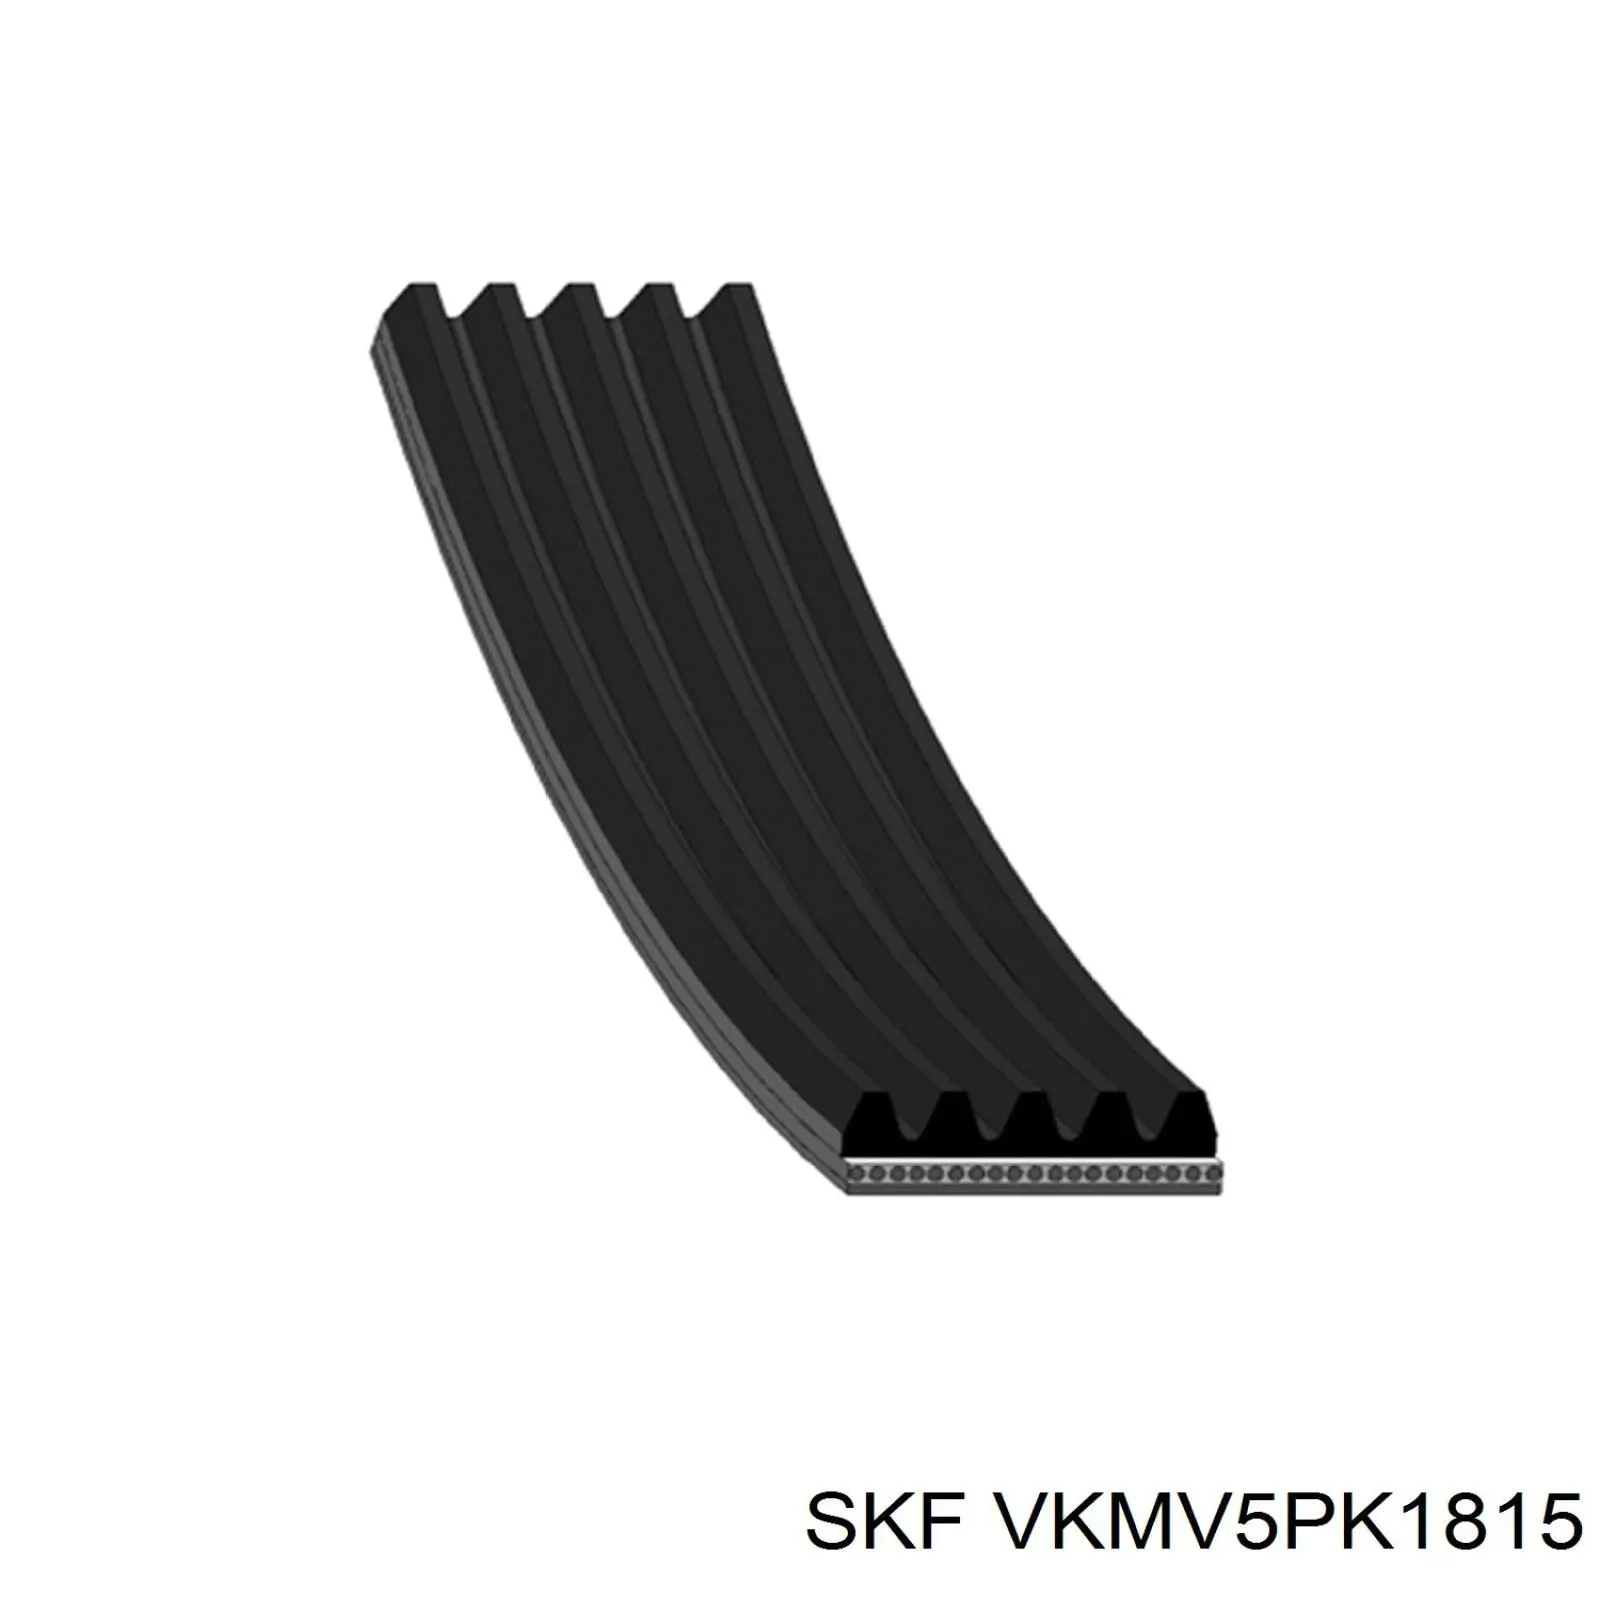 VKMV5PK1815 SKF correa trapezoidal